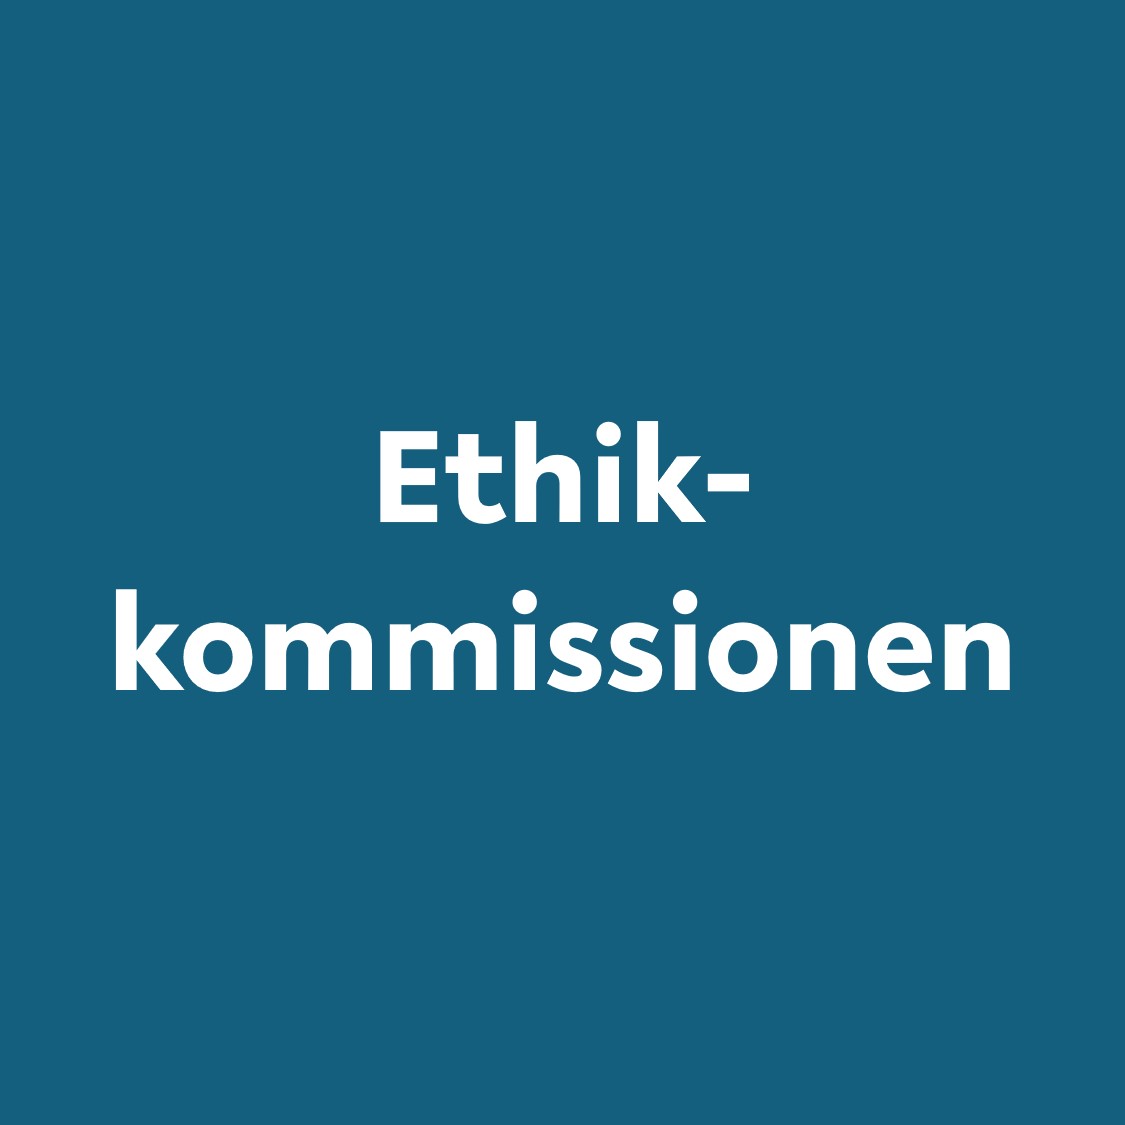 Blaues Quadrat mit Schrift Ethikkommissionen